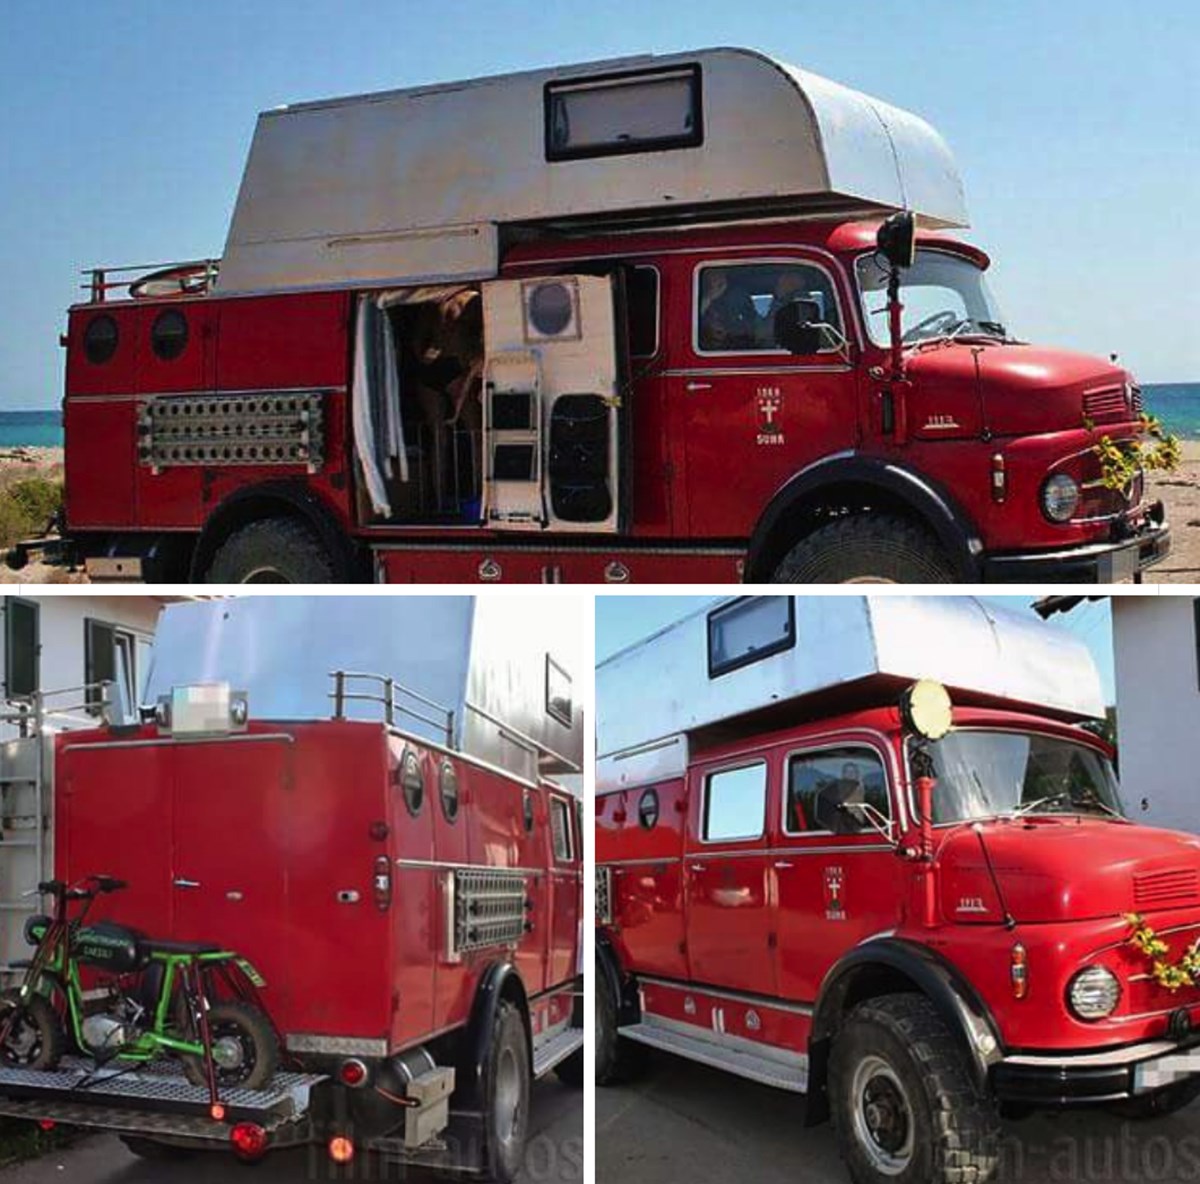 Bolette fra 'Nybyggerne' er også i sin søgen faldet over en gammel, rød brandbil, der var lavet om til autocamper. Det må nemlig gerne være en gammel, lidt ‘skæv’ autocamper